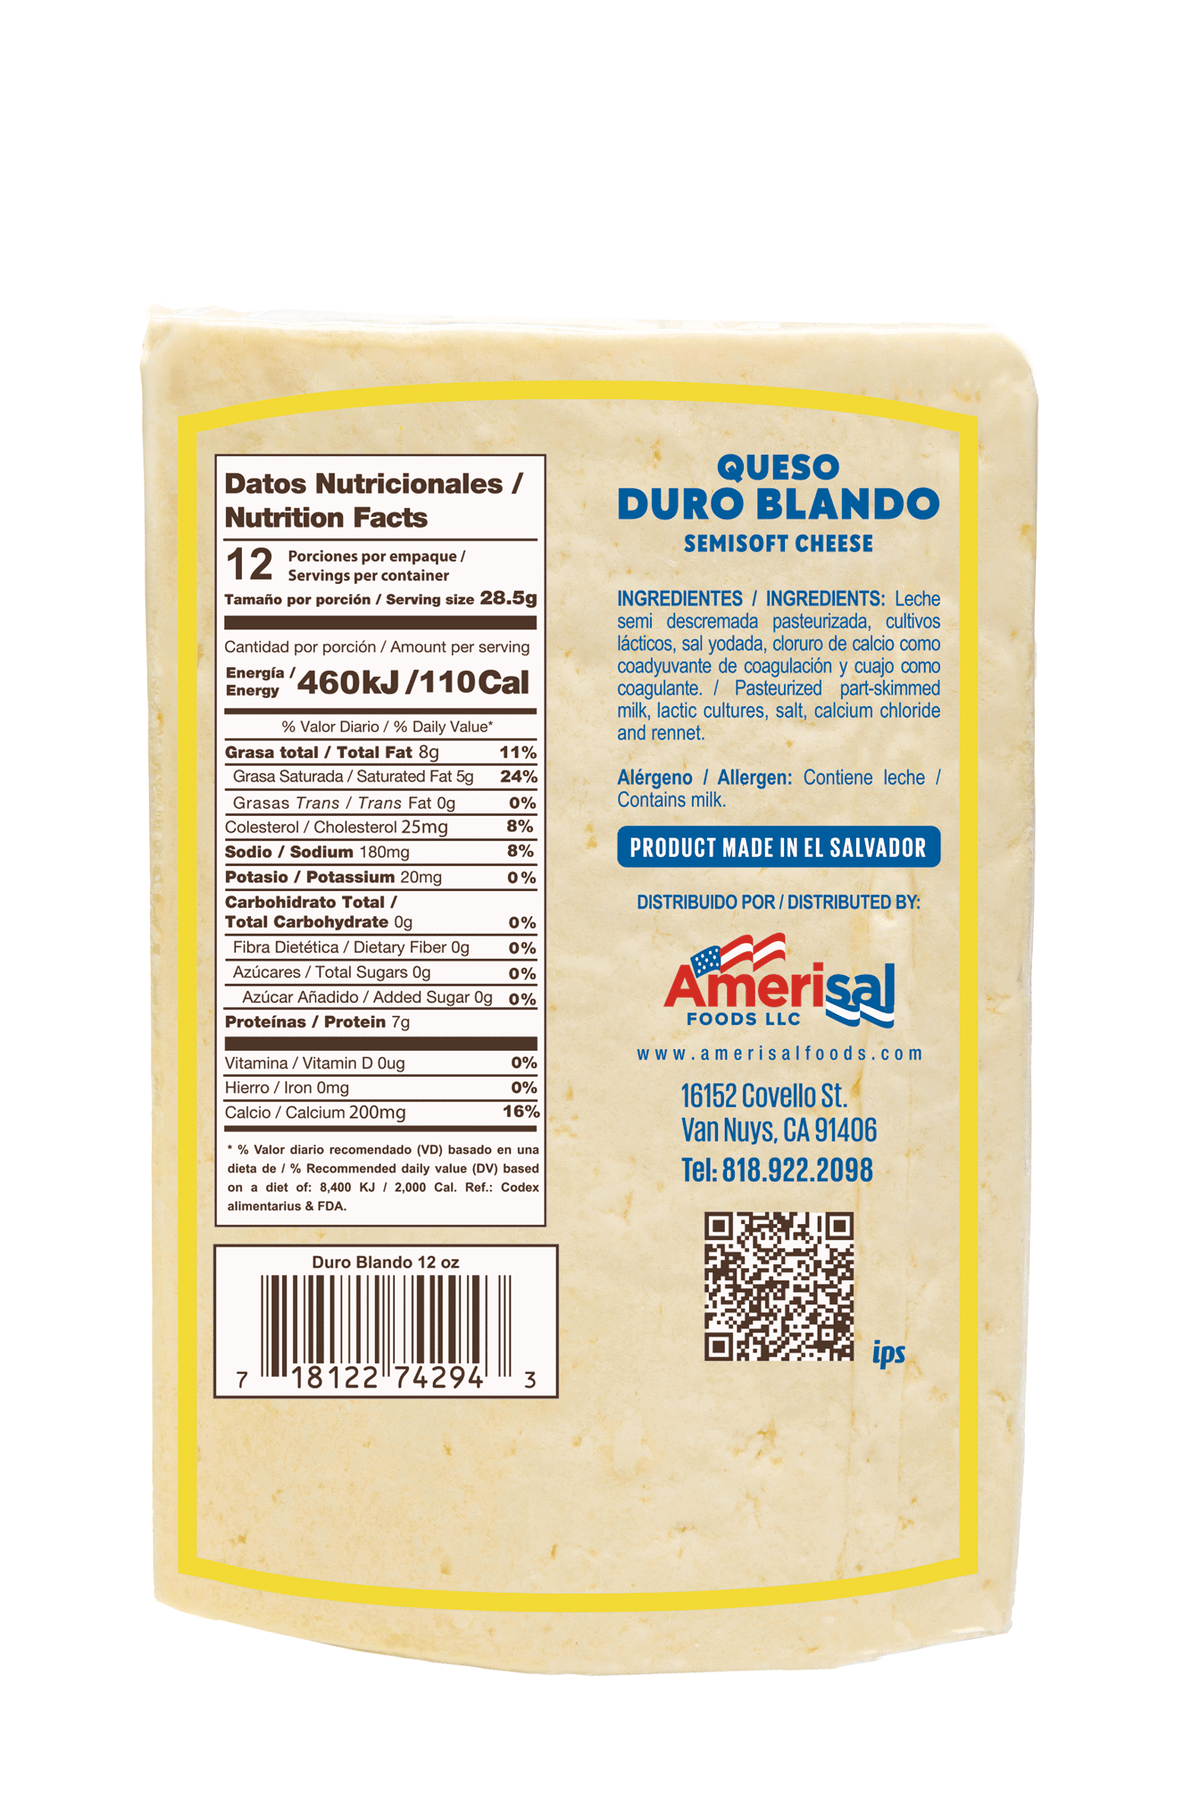 Perla Queso Duro Blando (Semi Soft Cheese) 12 oz